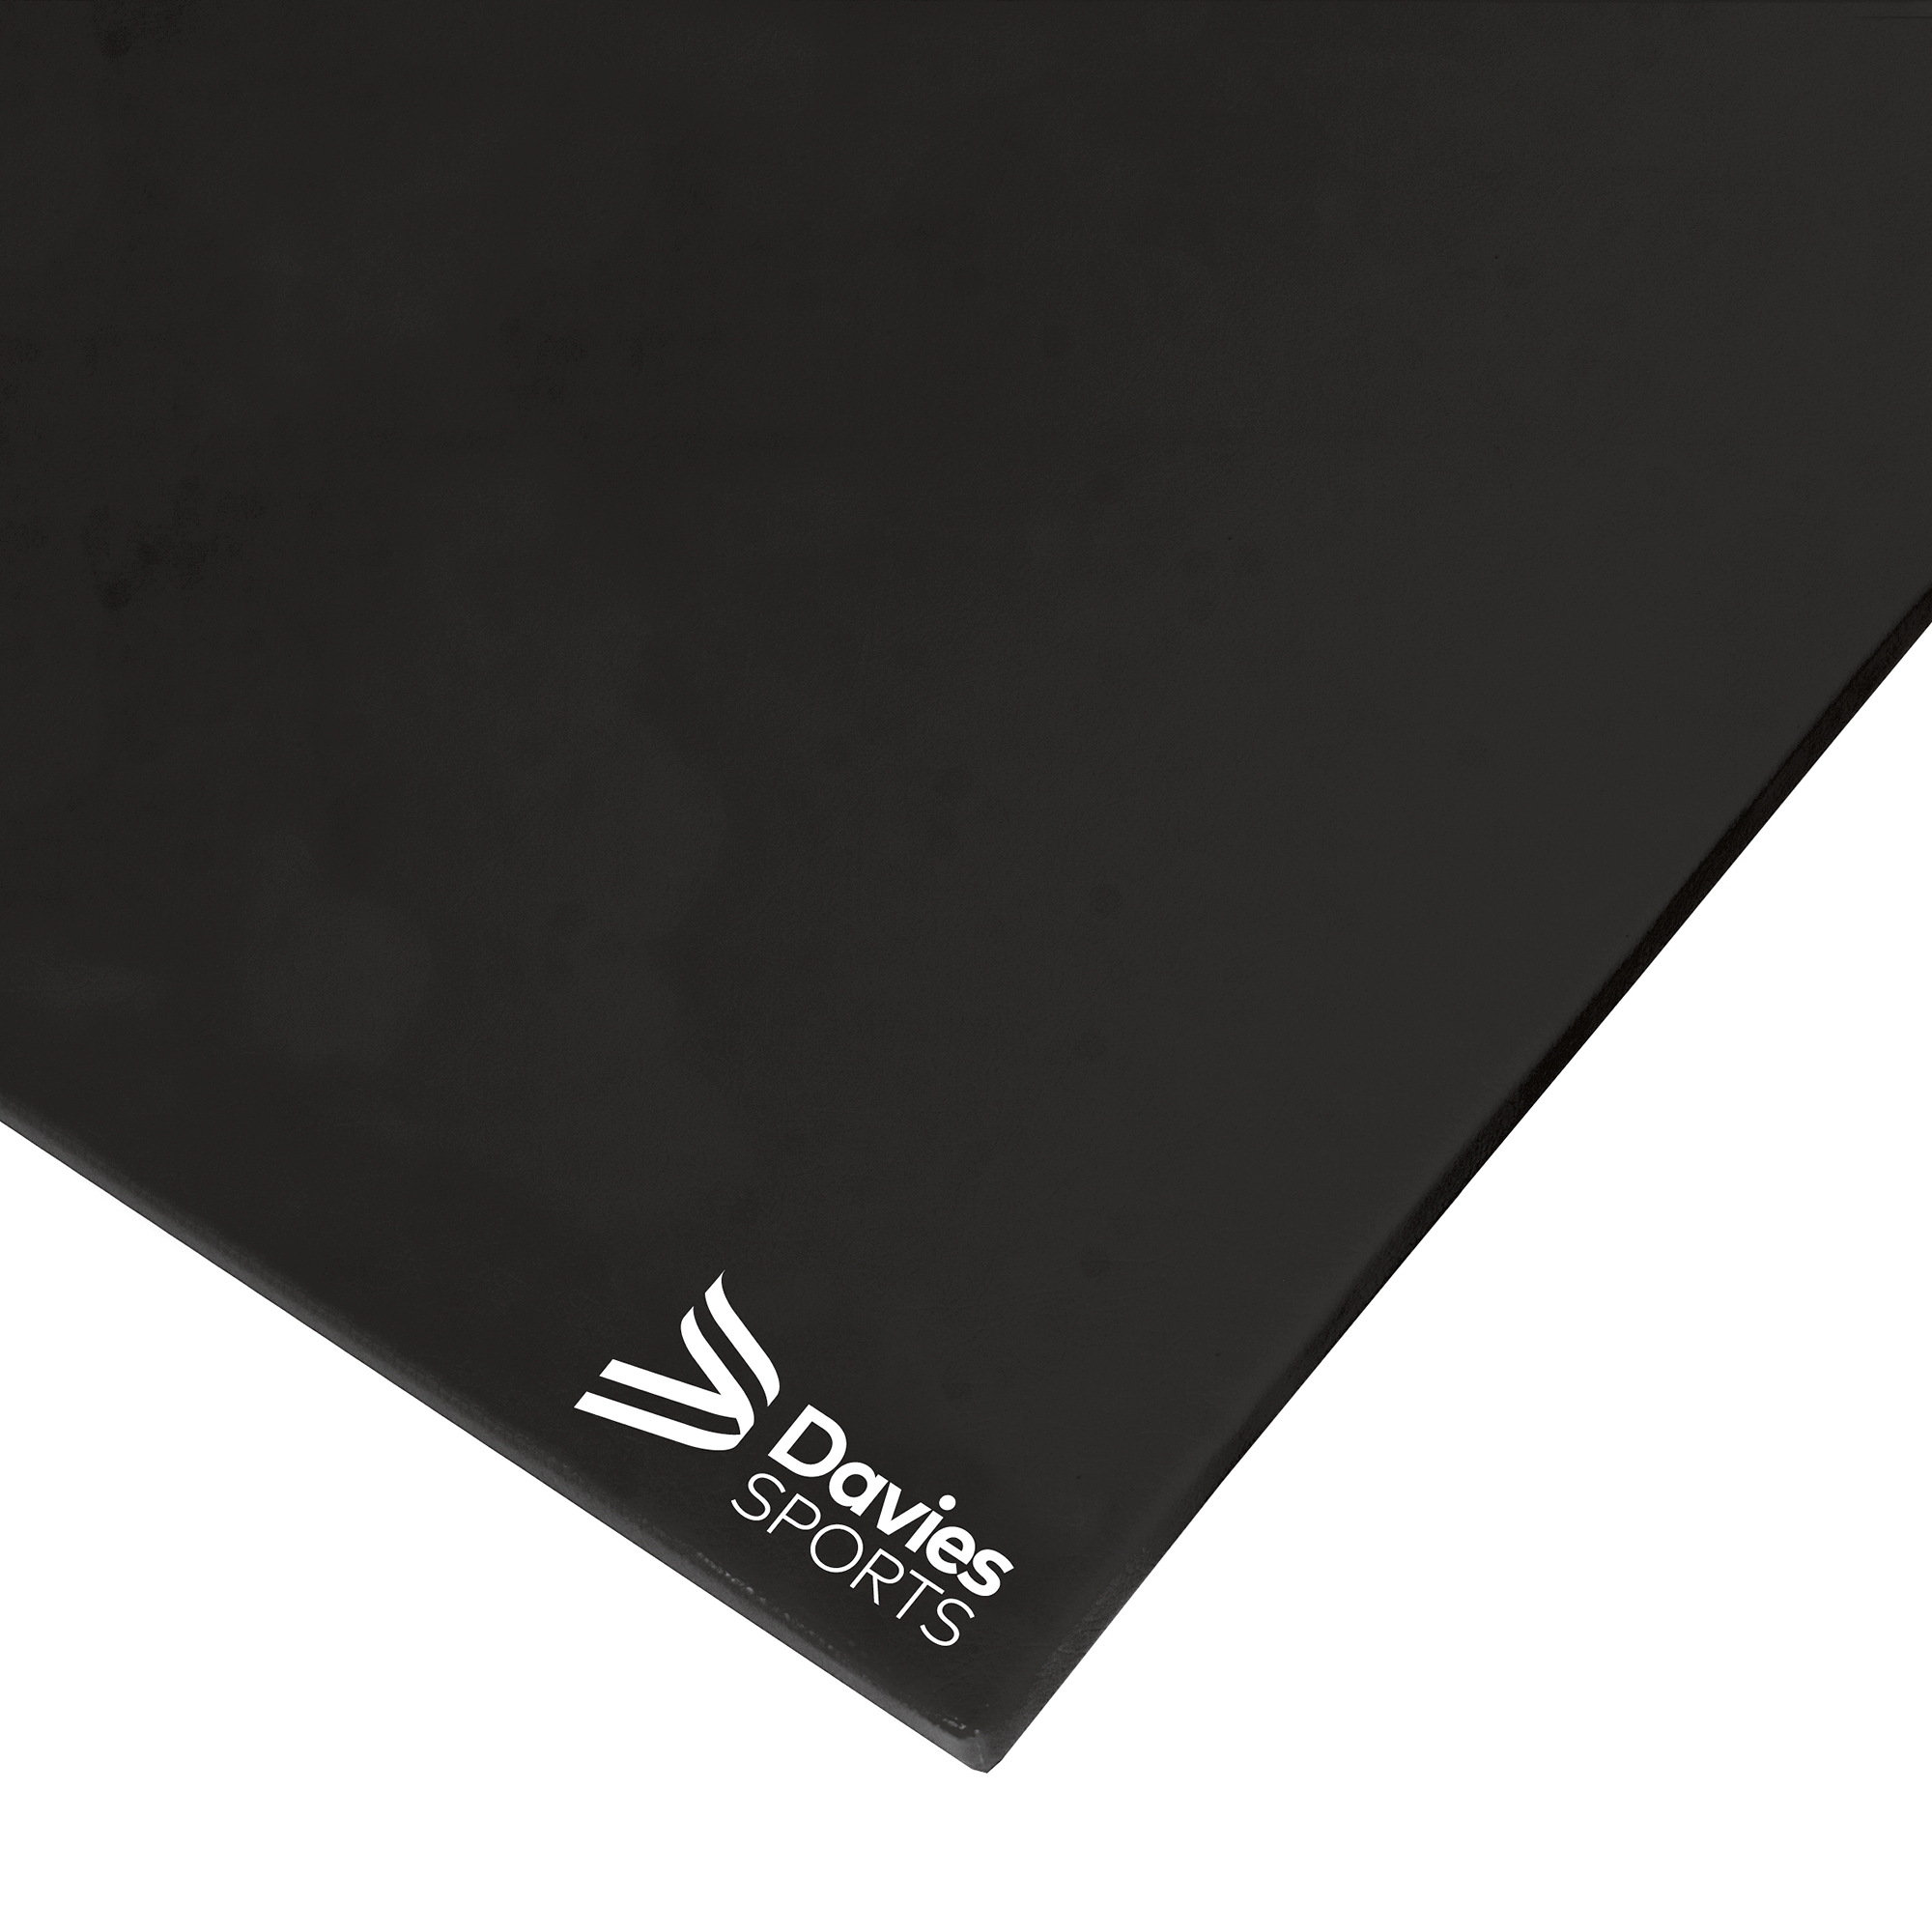 Davies Sports Deluxe Chipfoam Mat Standard Black - 1.83m x 1.22m x 32mm